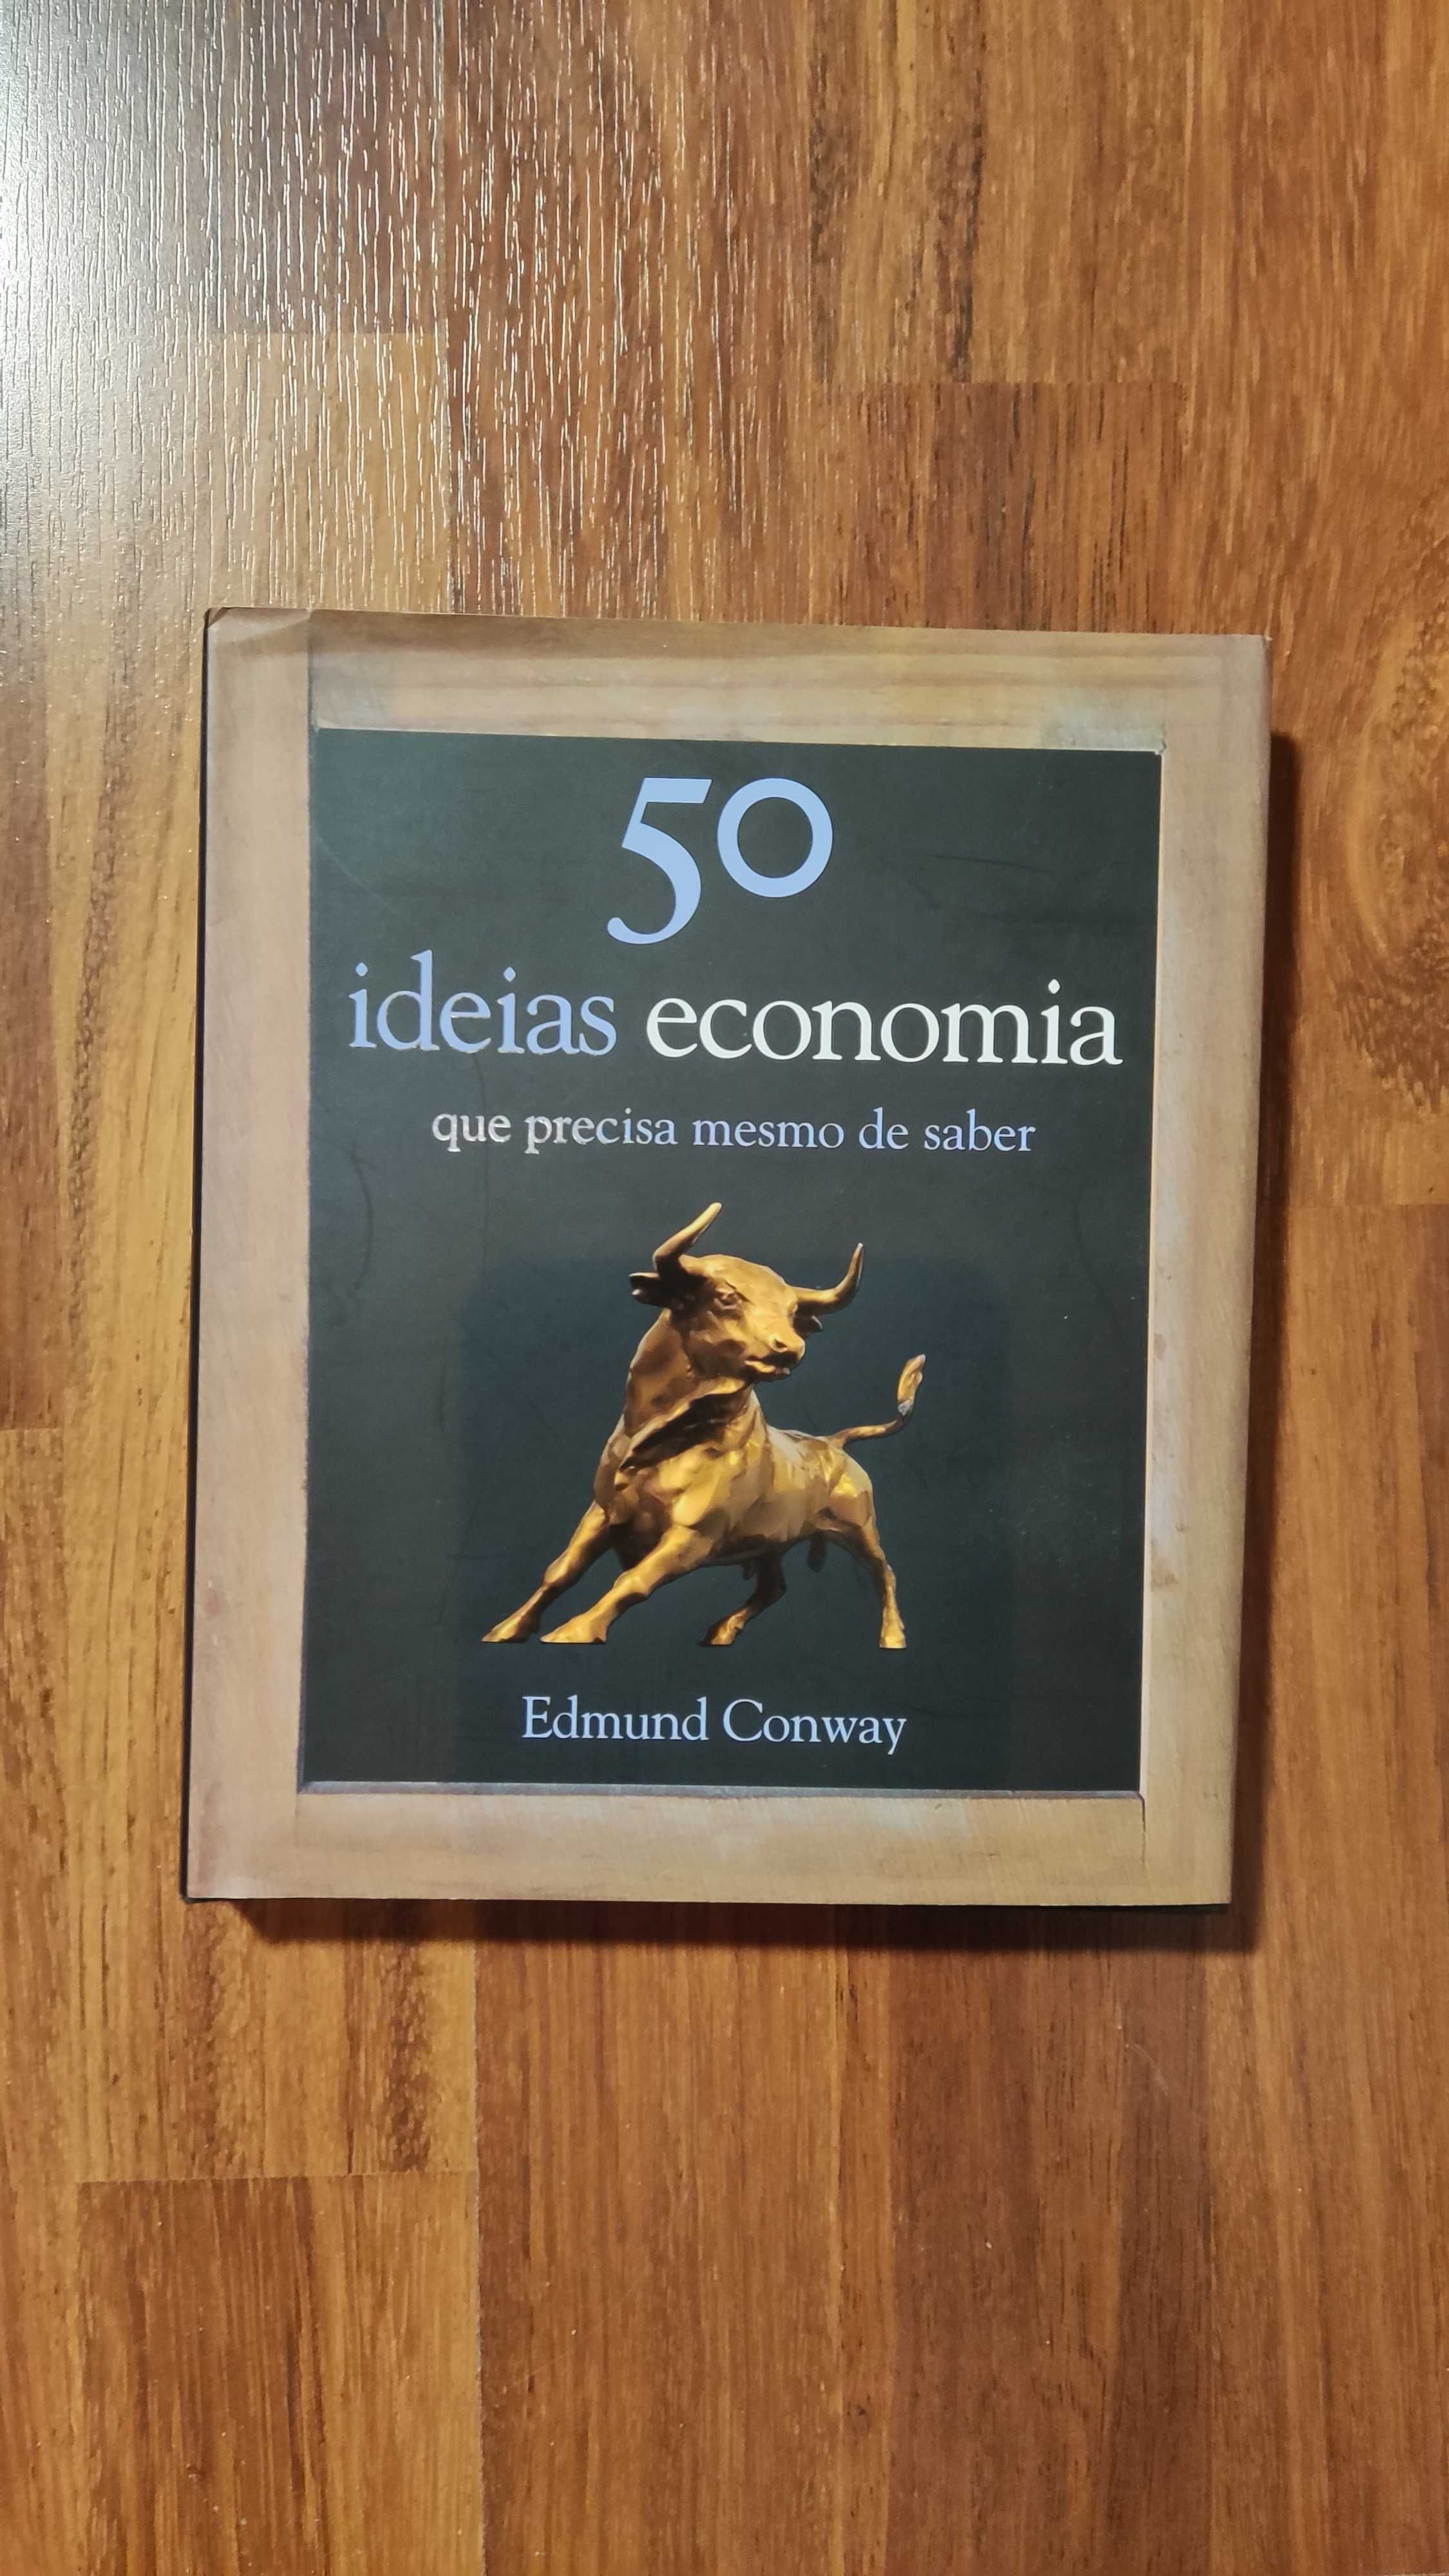 Livro "50 IDEIAS ECONOMIA que precisa mesmo de saber" de Edmund Conway